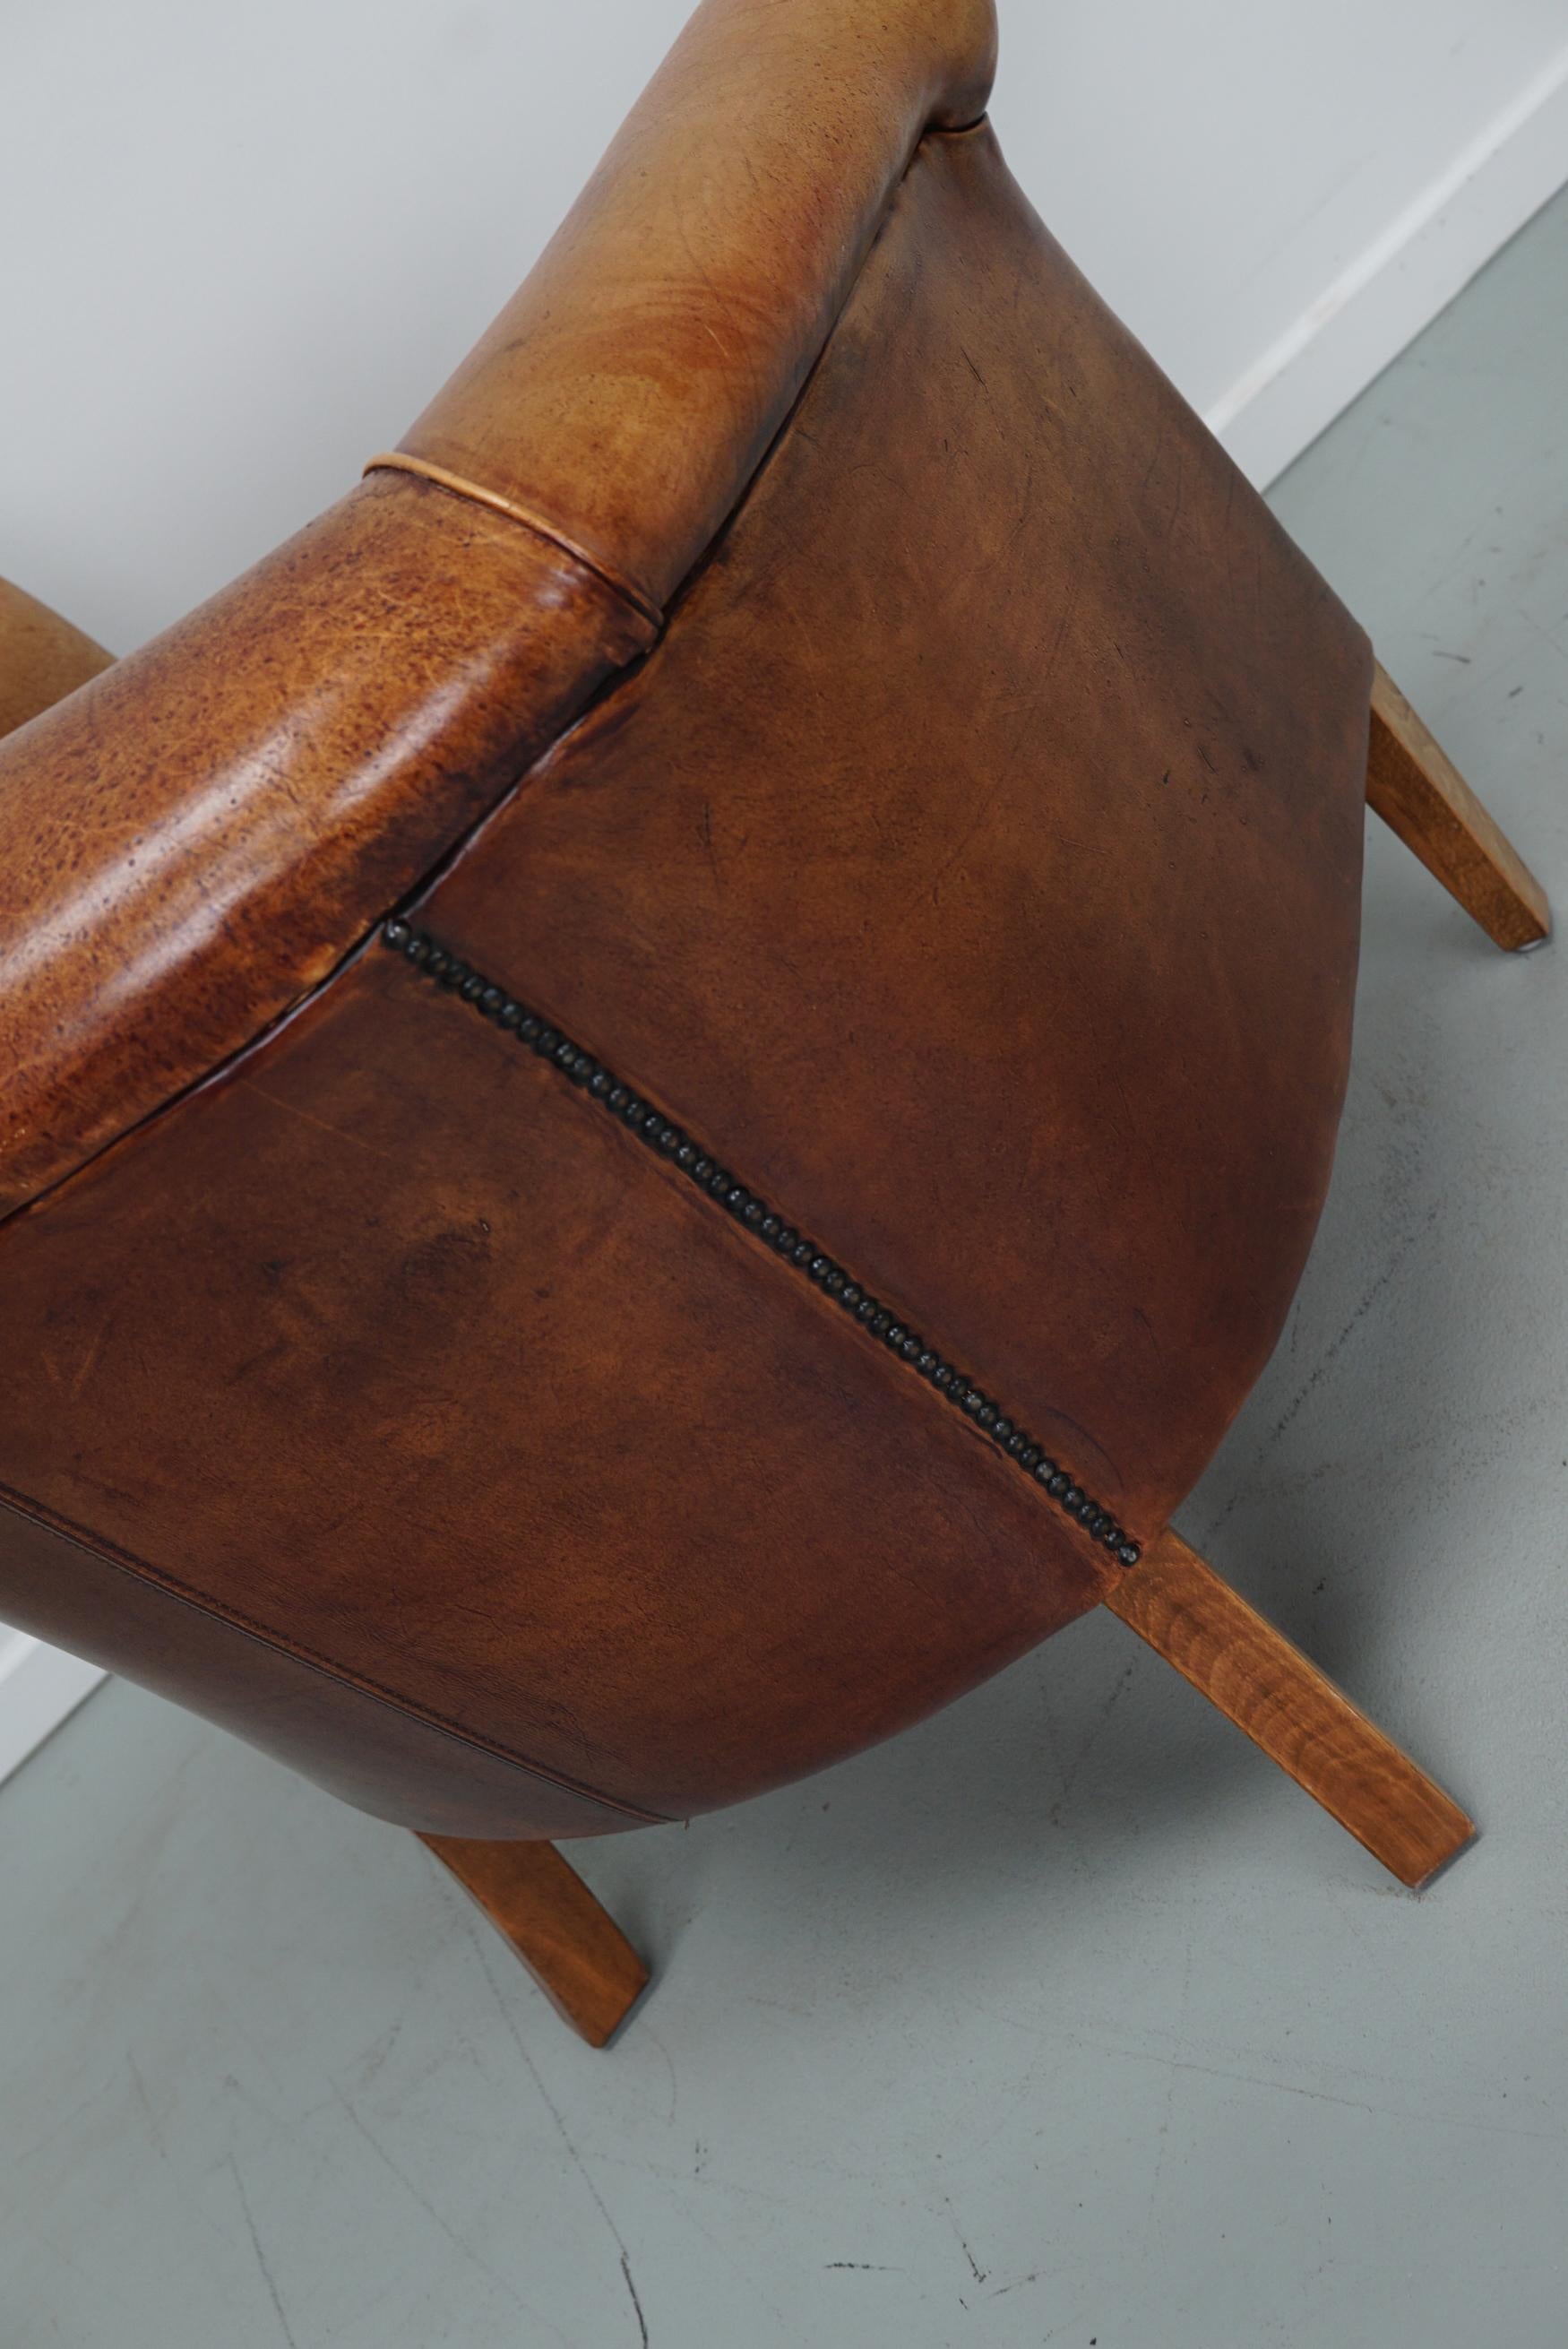 Vintage Dutch Cognac Colored Leather Club Chair 3